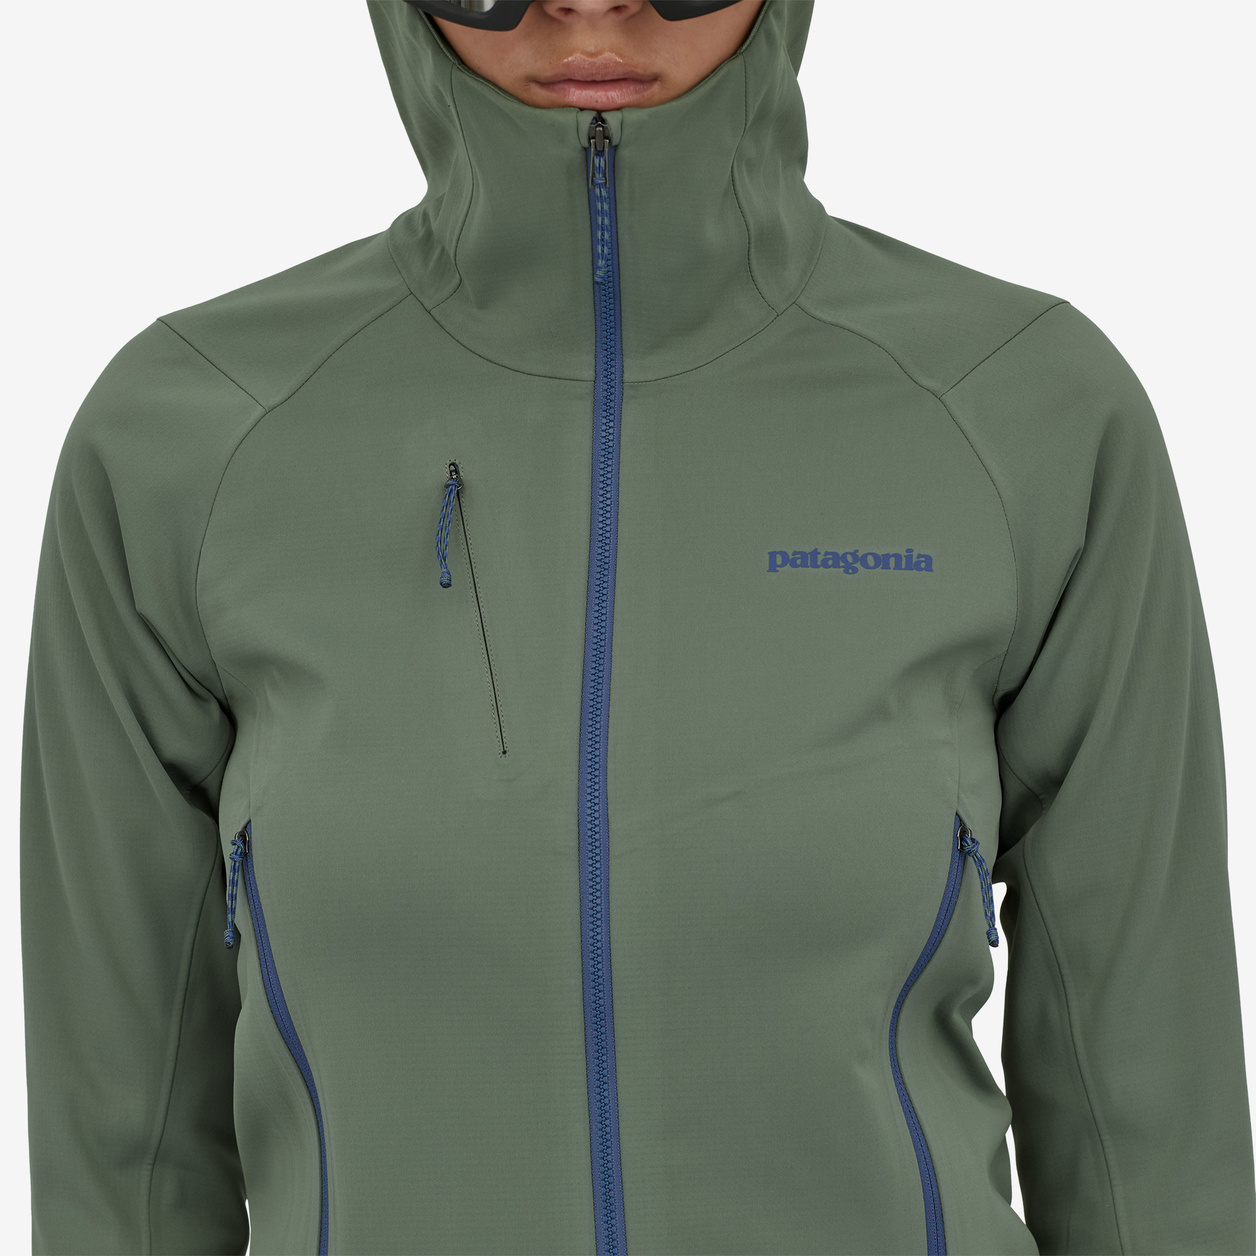 Kommentér Gå op og ned Blive opmærksom Patagonia Women's Upstride Jacket - Bentgate Mountaineering